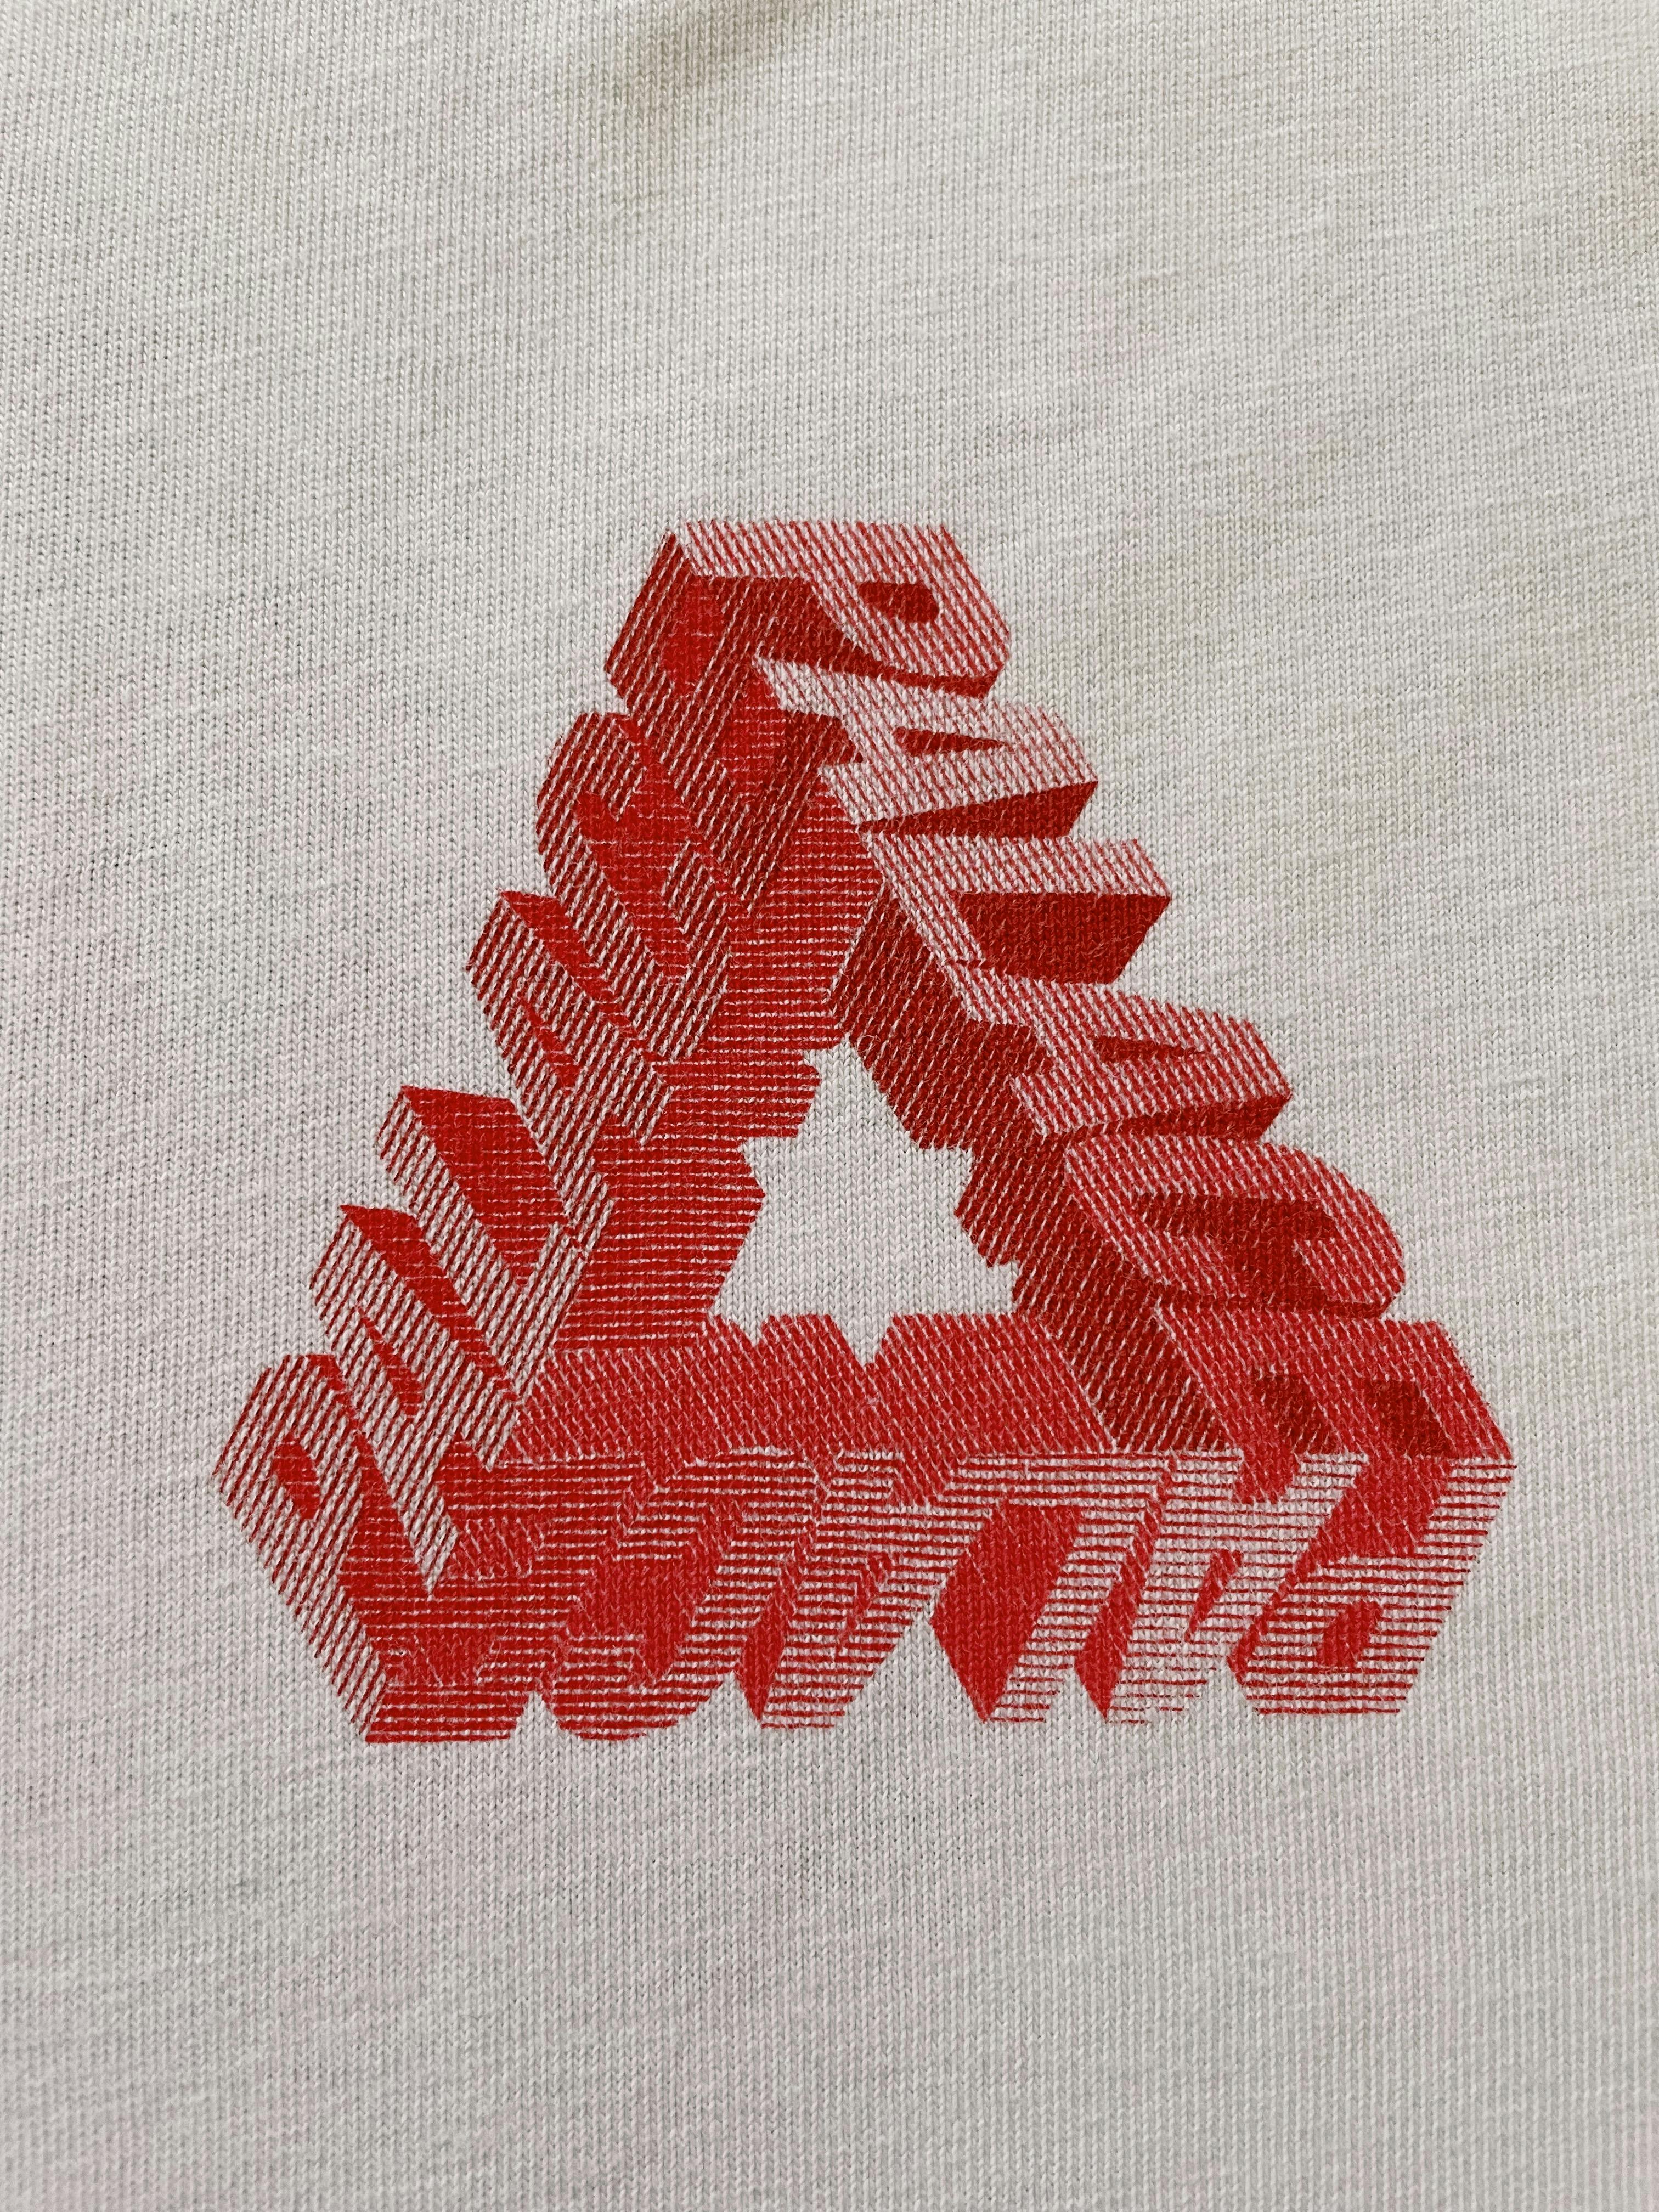 Palace P-3D Tri-Ferg T-shirt White - 3